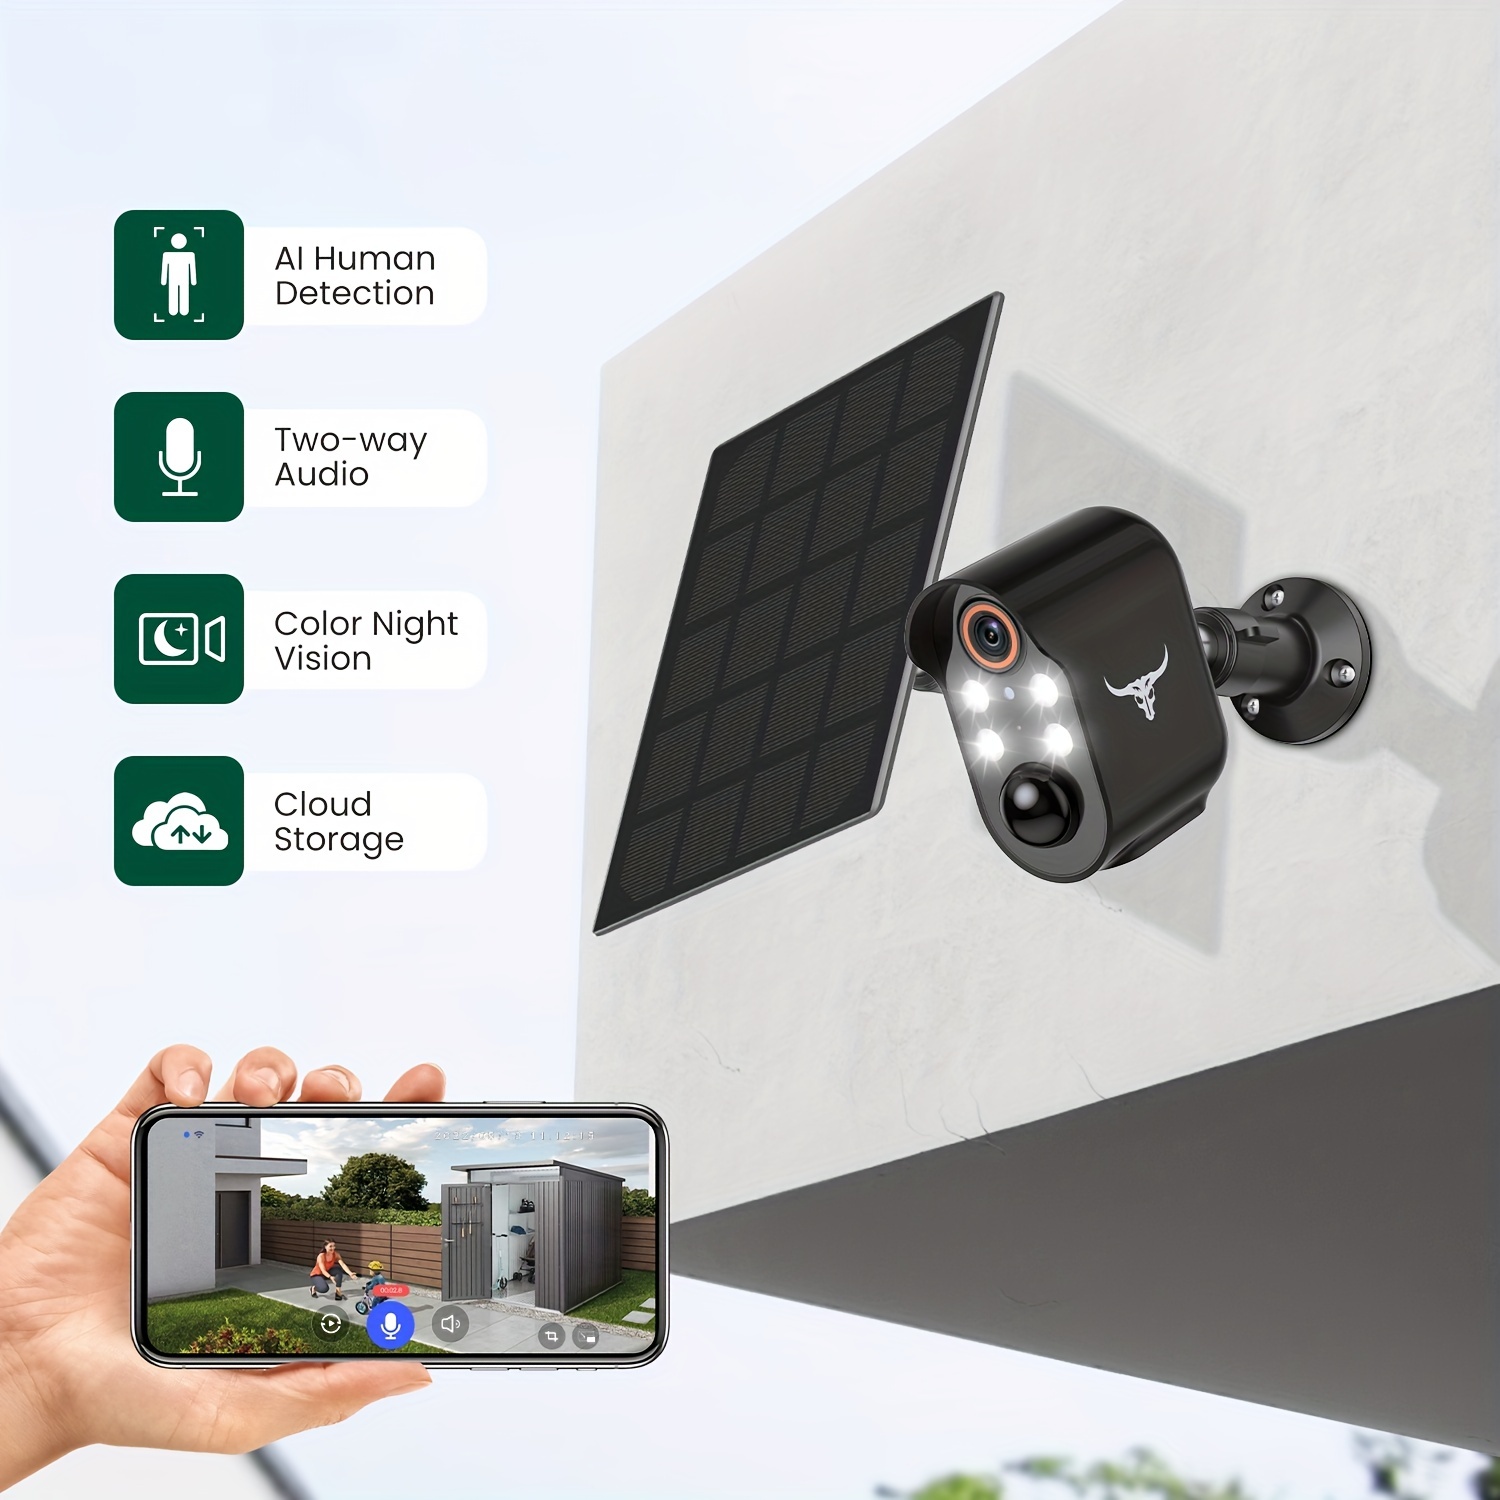 Cámara de vigilancia Solar Tuya Smart, con batería incluida